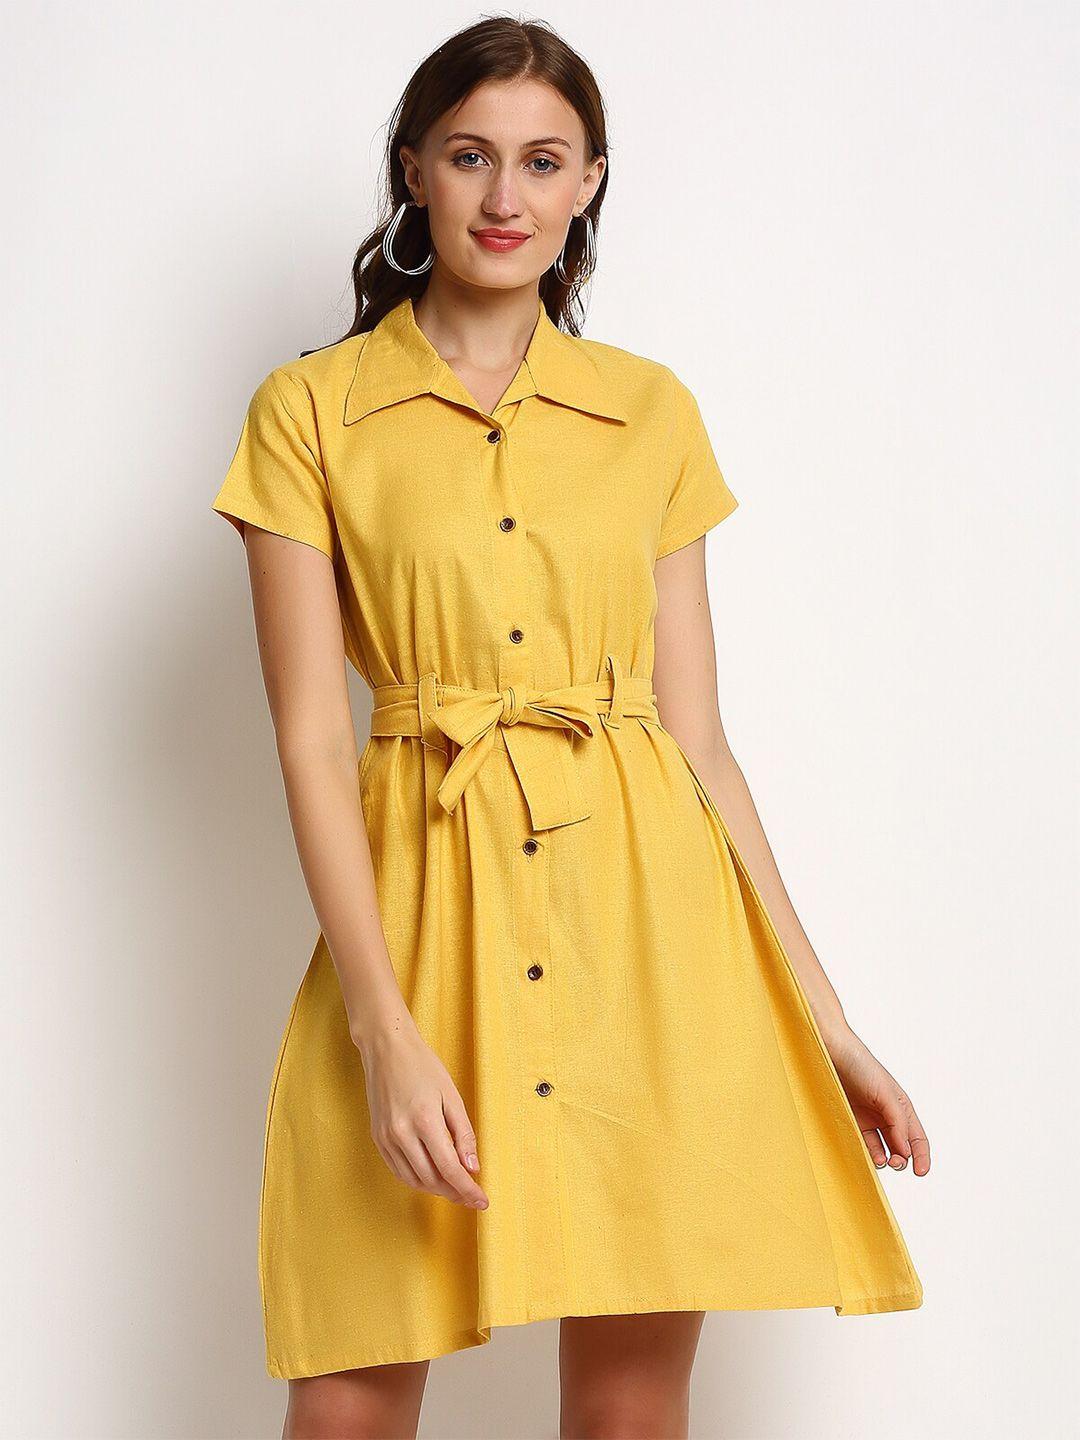 enchanted-drapes-yellow-shirt-dress